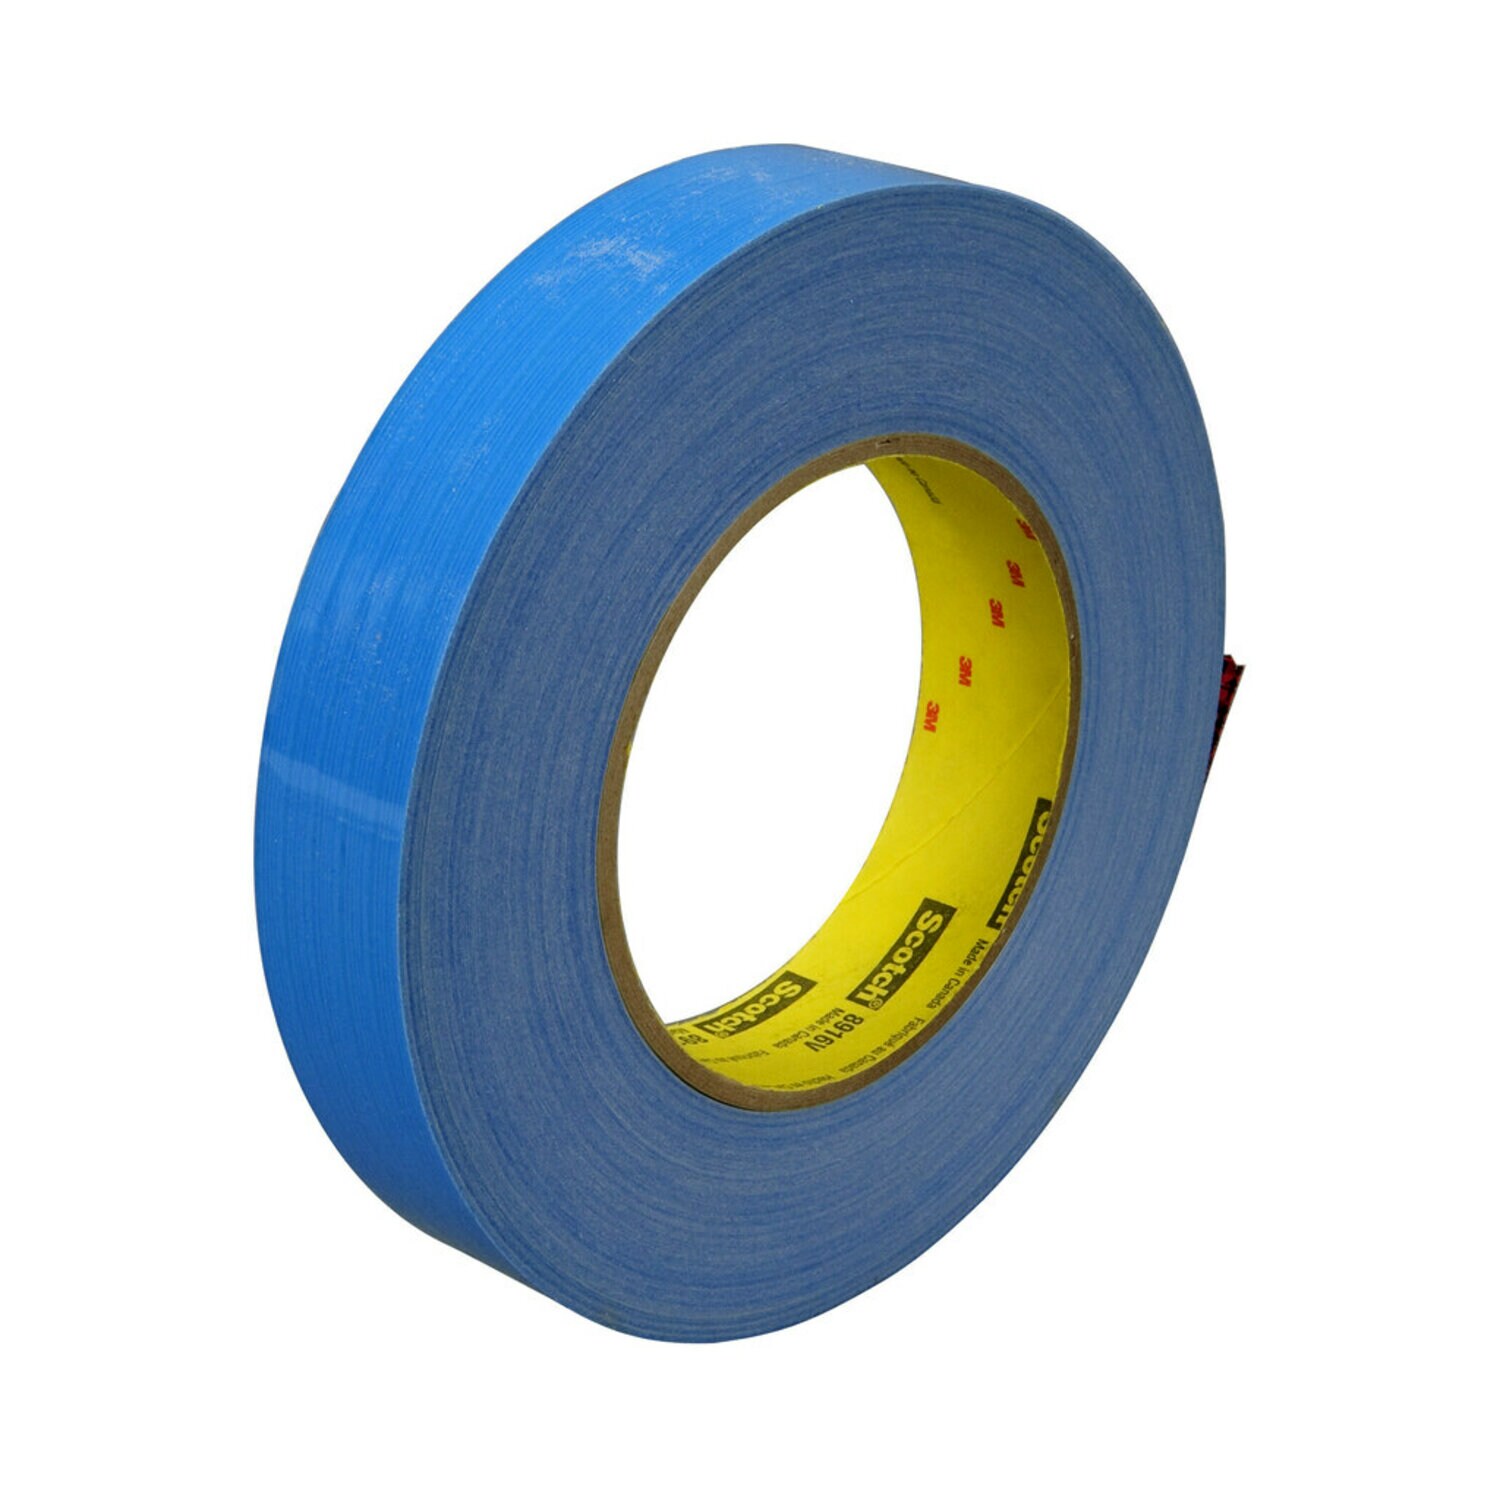 7000123854 - Scotch Filament Tape 8916V, Blue, 12 mm x 55 m, 6.8 mil, 6.8 mil, 72
per case